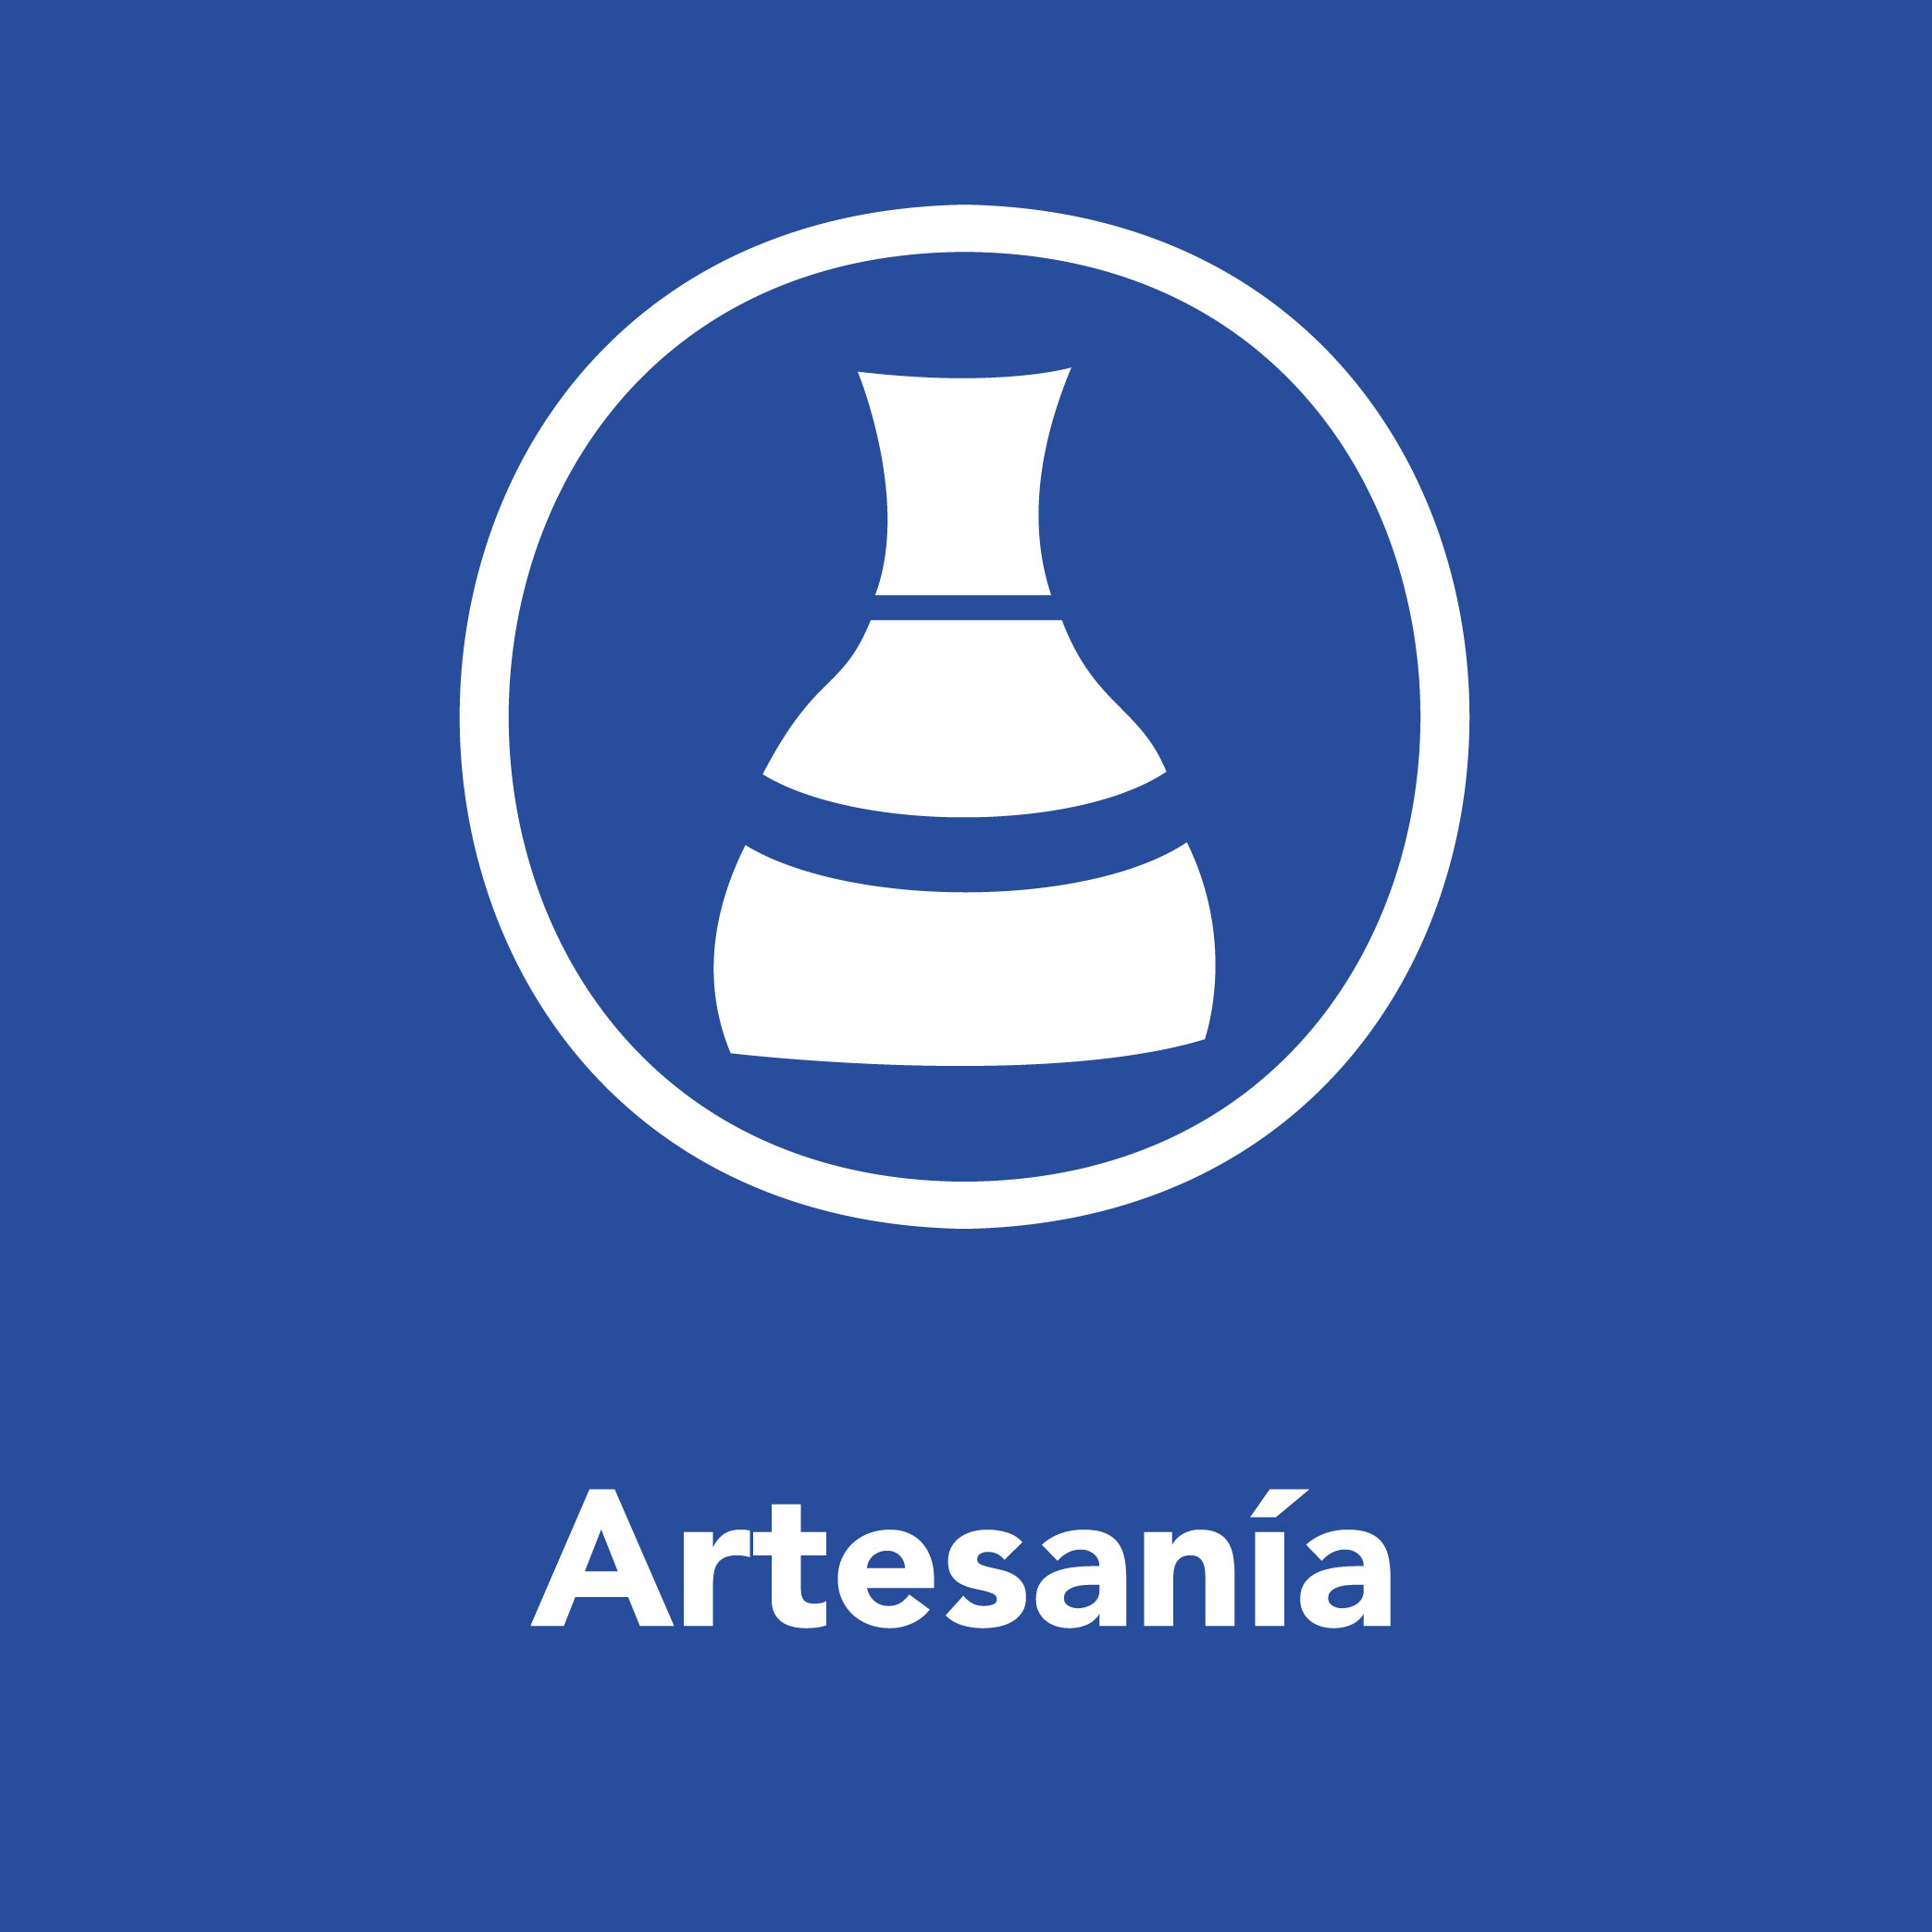 Artesania